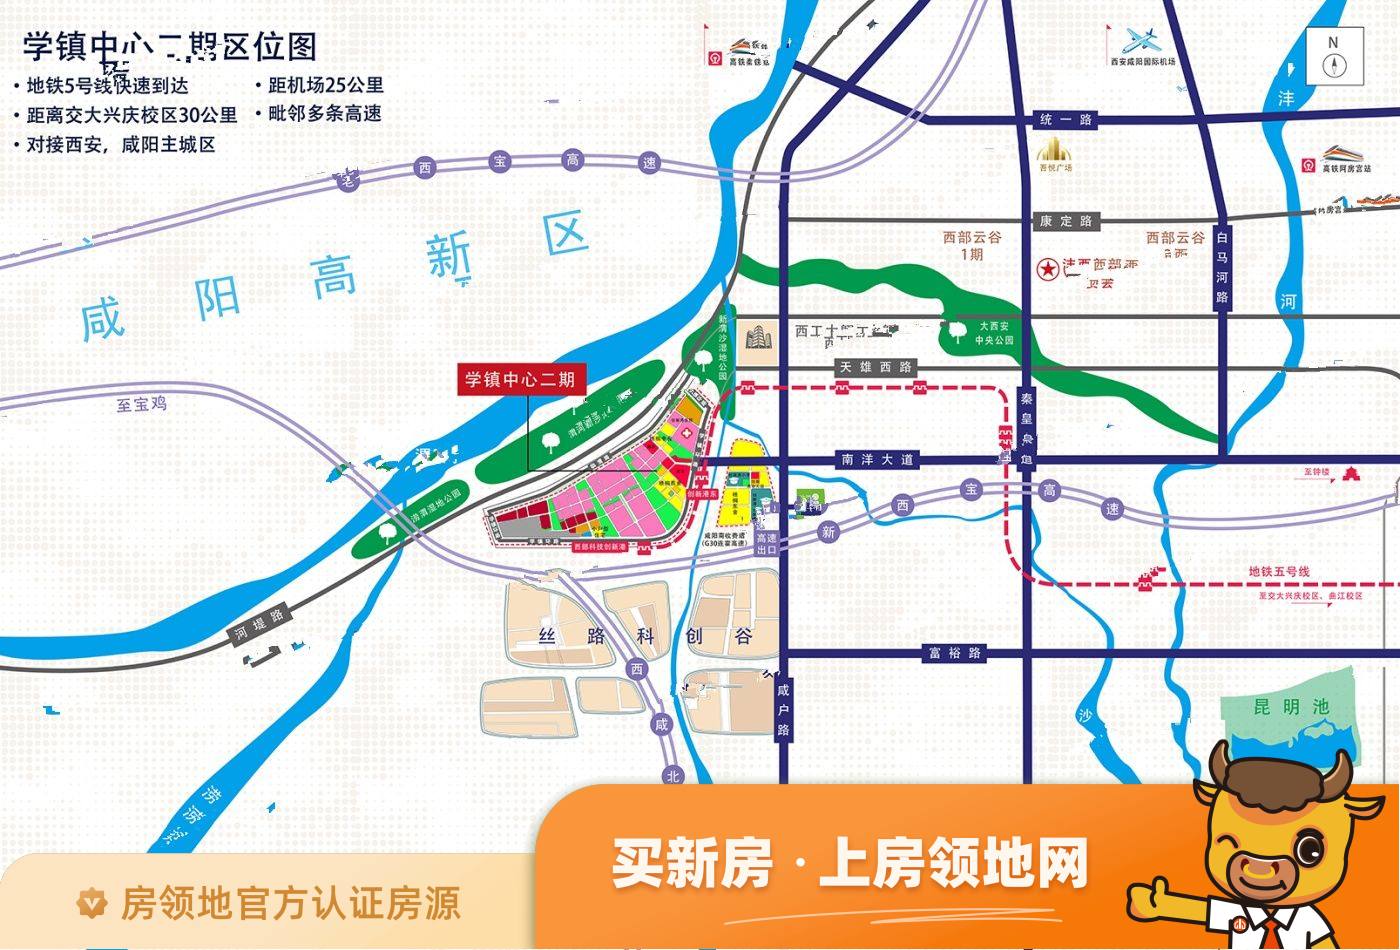 中国西部科技创新港学镇中心Ⅱ期位置交通图31